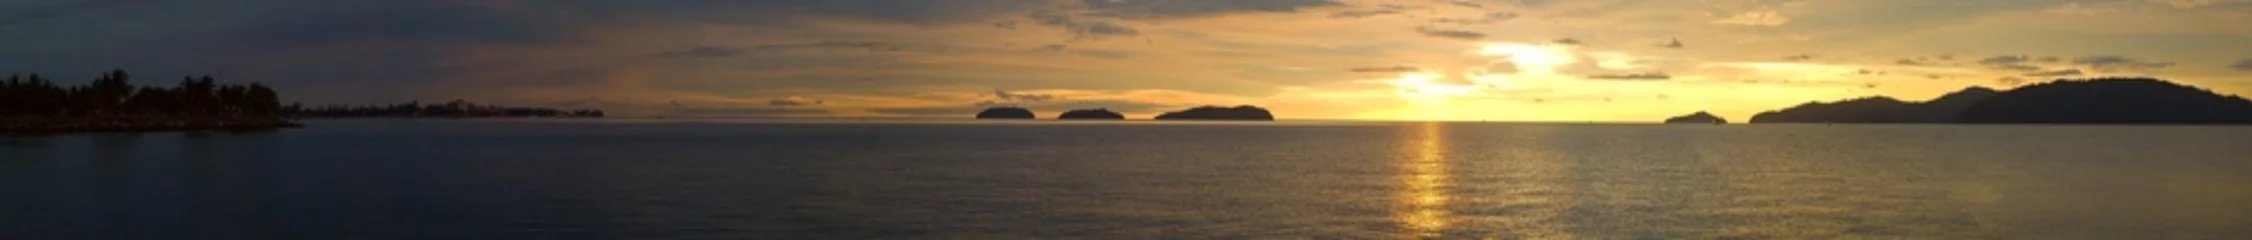 Fototapete Meer / Ozean Ein ultraweiter Panoramablick auf einen goldenen Sonnenuntergangsozean